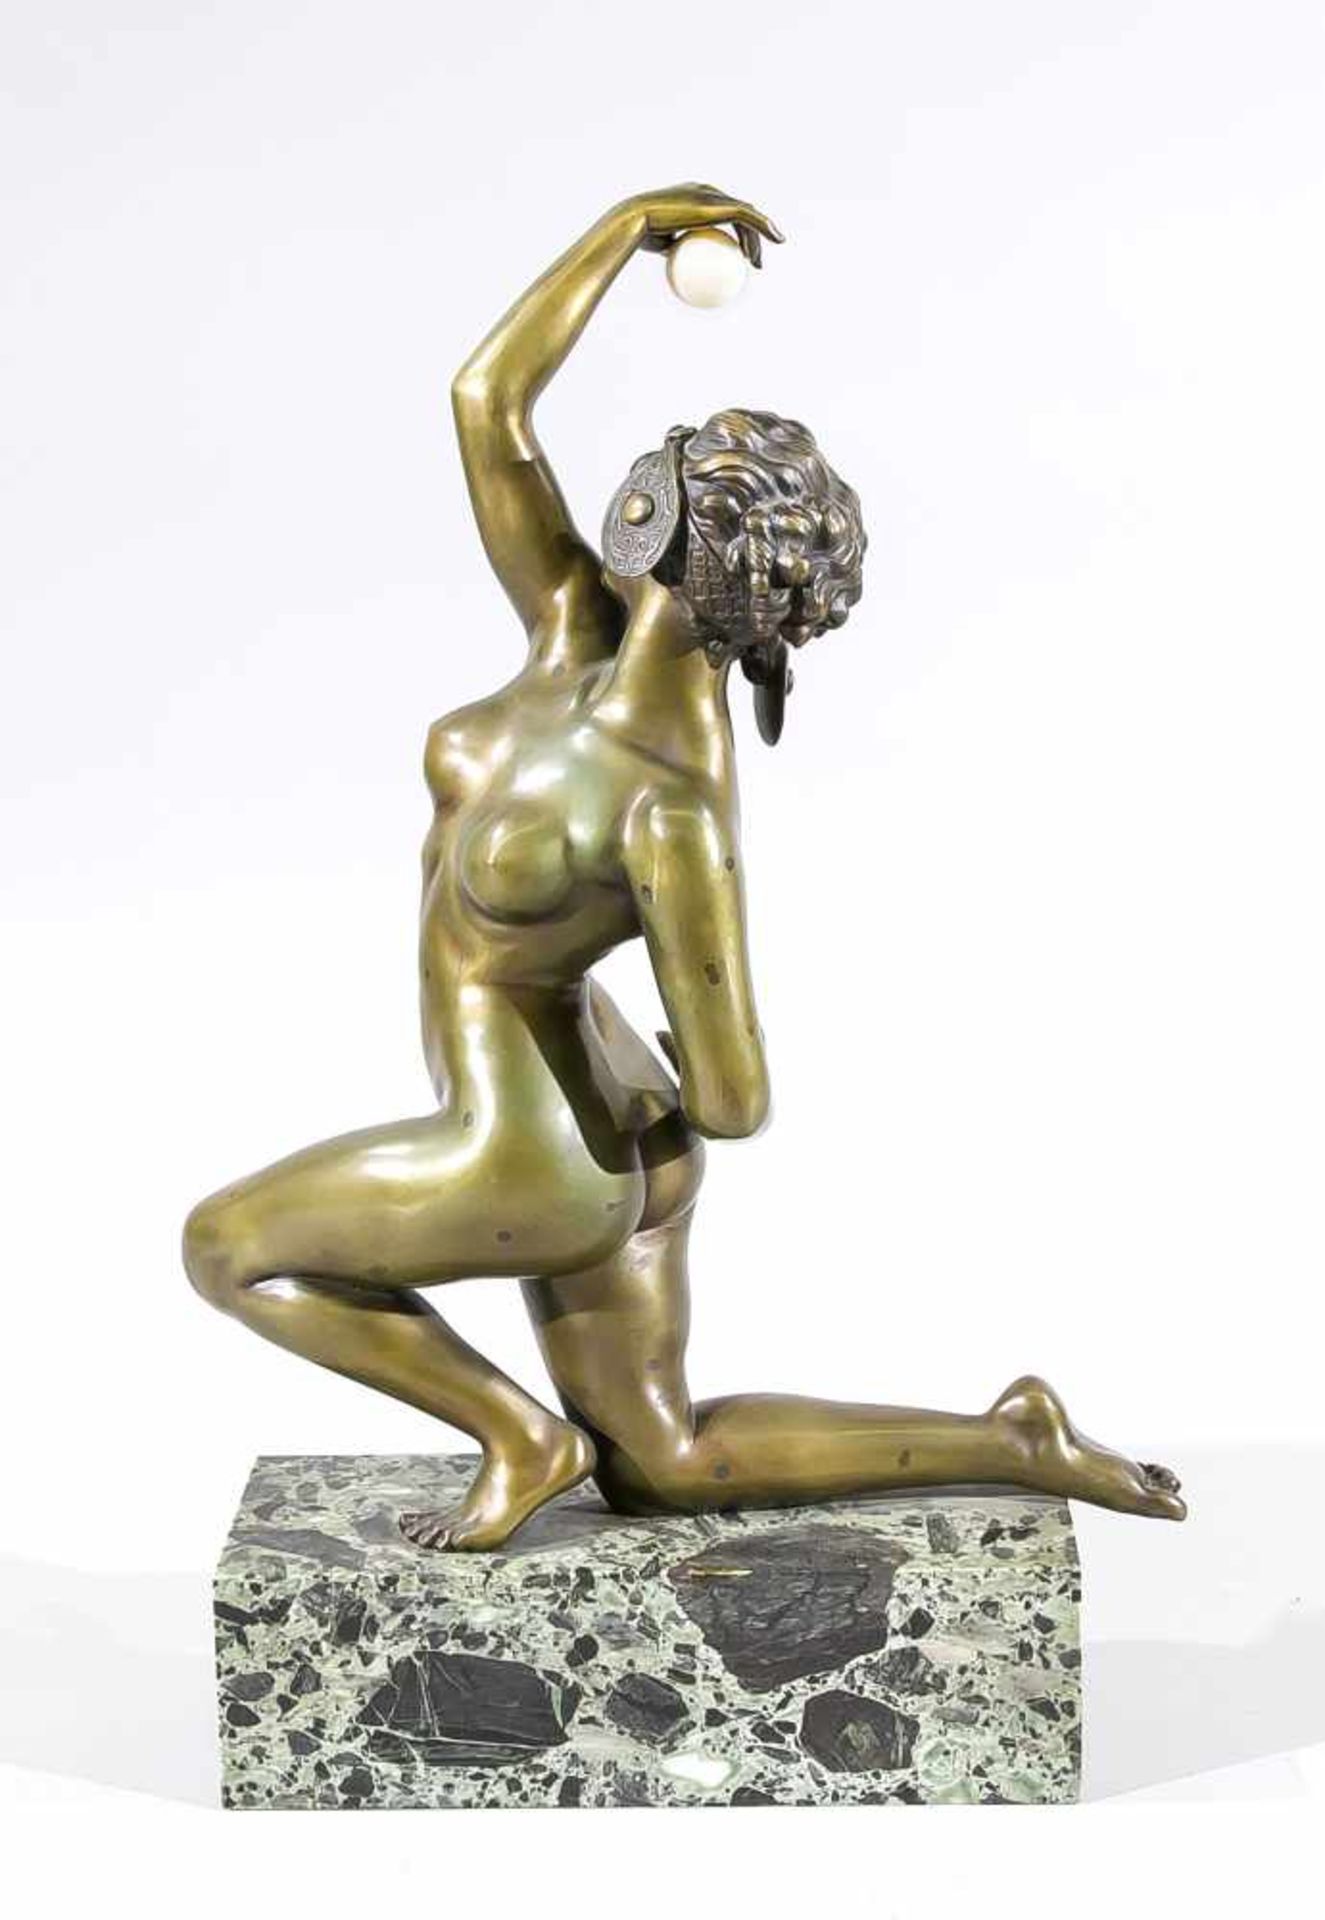 Affortunato Gory (tätig ca. 1895-1925), Bildhauer in Florenz, kniender weiblicher Akt miteiner - Bild 2 aus 2